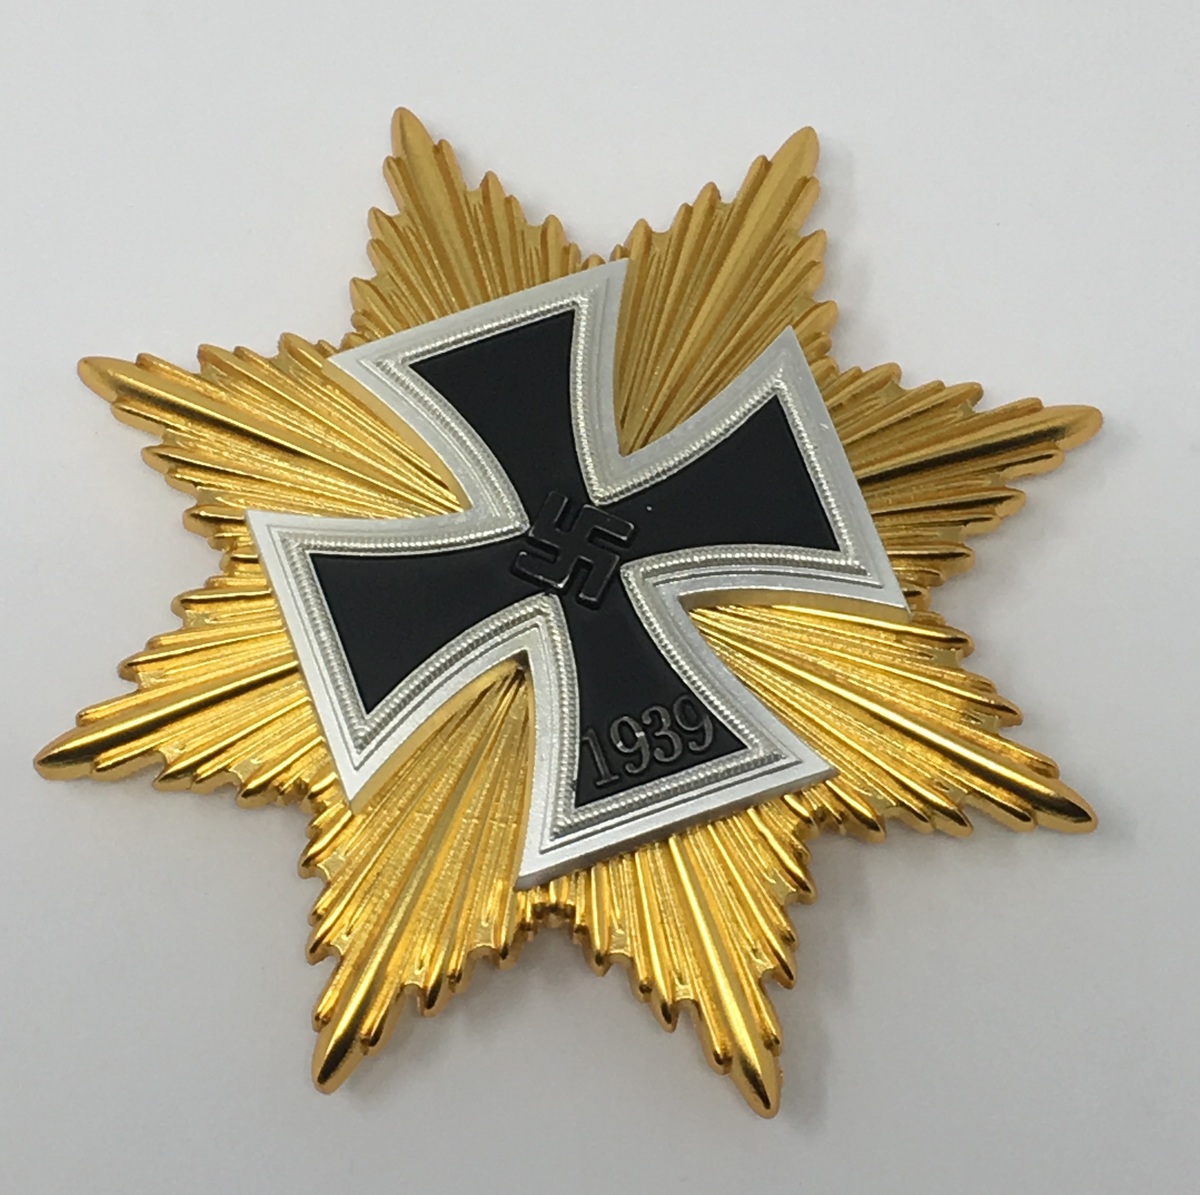 Ruban Grand Croix de la Croix de fer 1914 Ribbon Grand Cross of the Iron Cross 